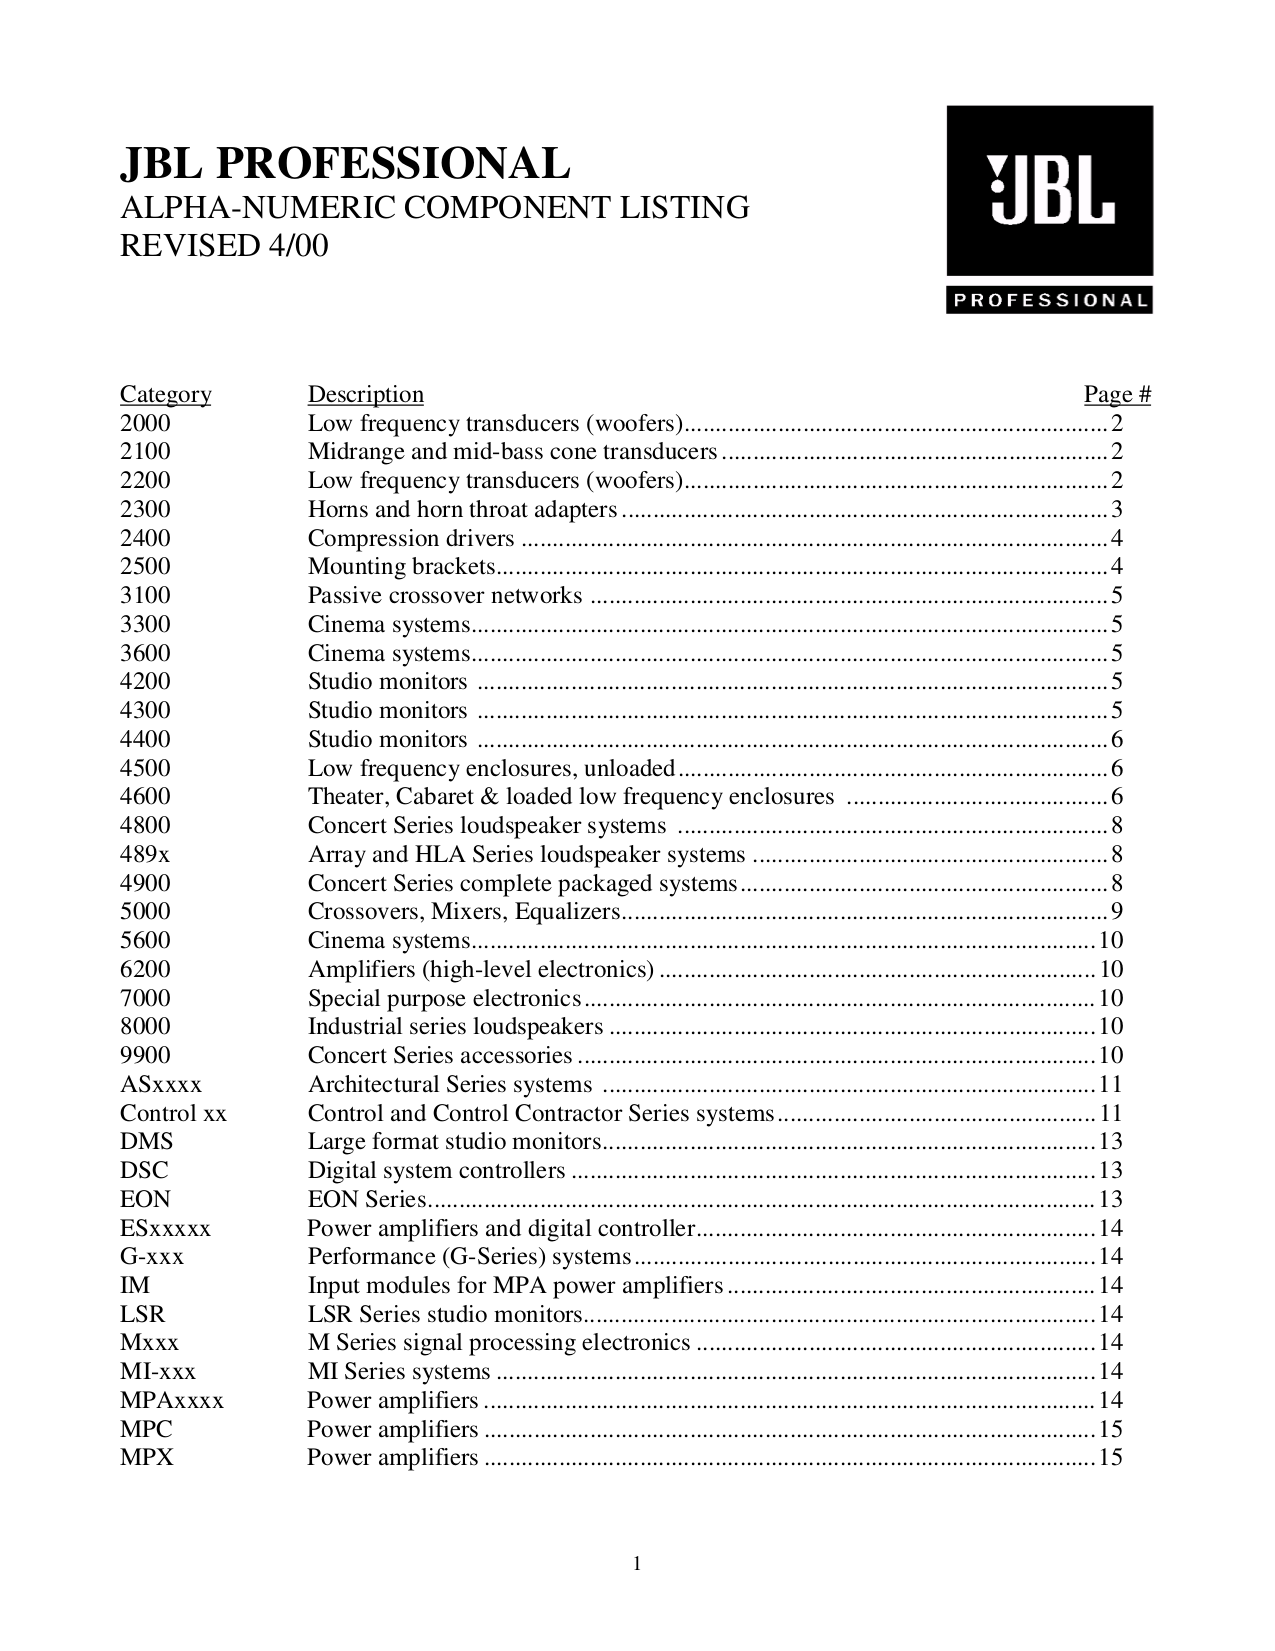 Download biopro 190 manual pdf